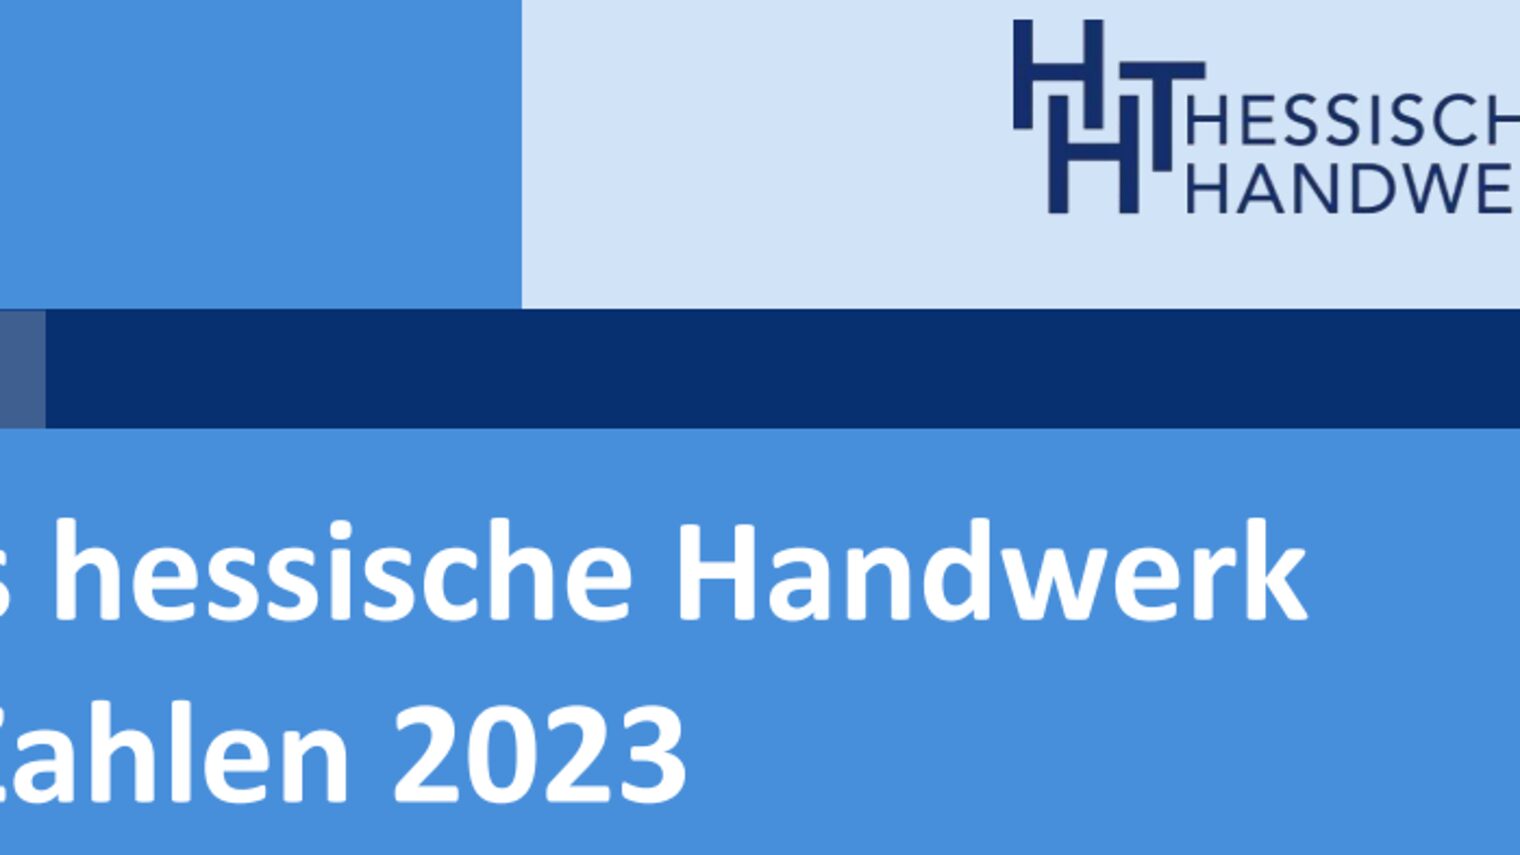 Logo: Hessischer Handwerkstag Schriftszug: Das hessische Handwerk in Zahlen 2023